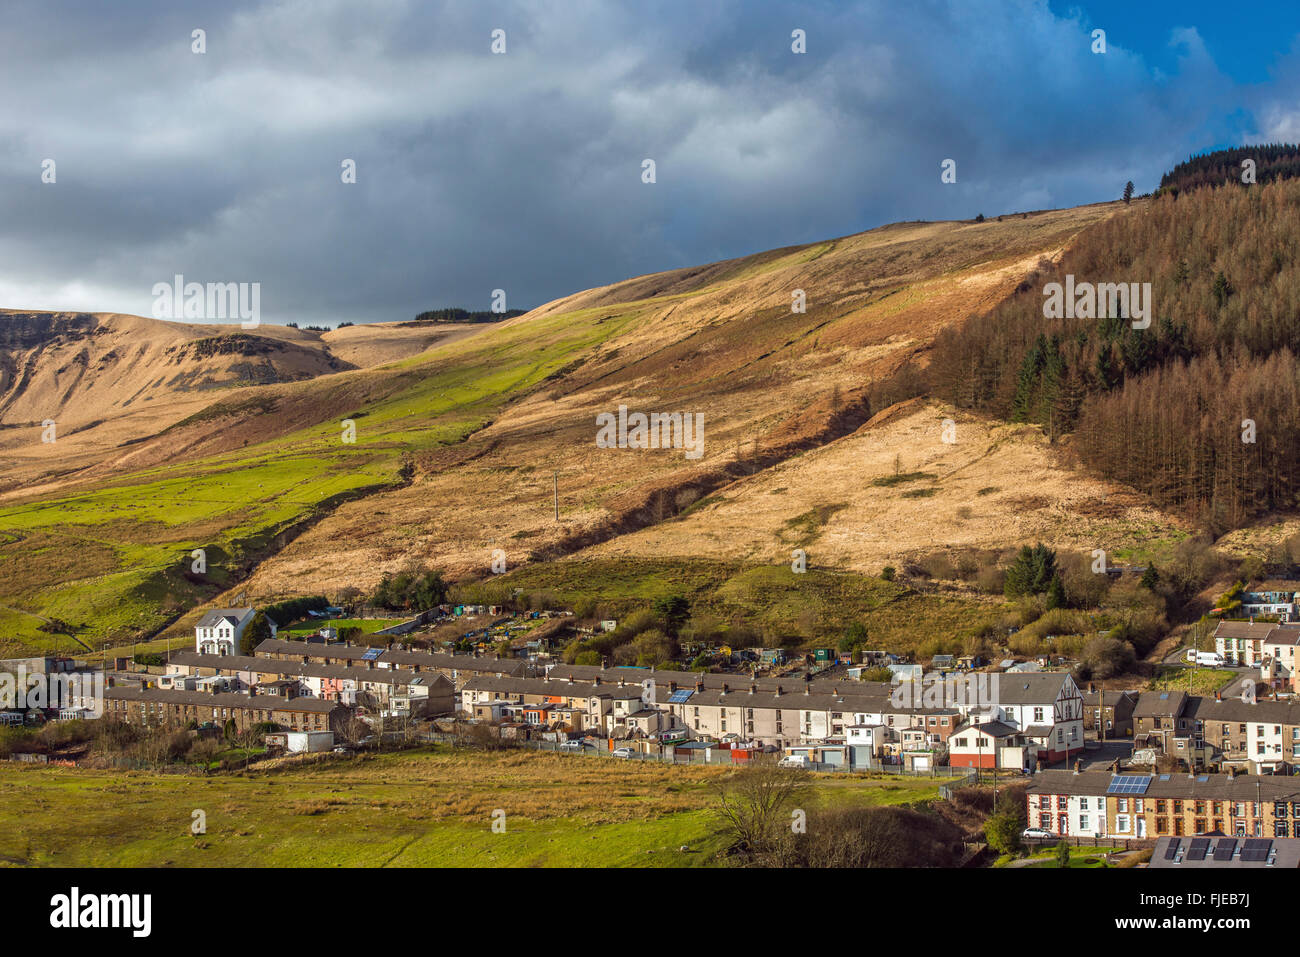 El poco viejo poblado minero de carbón Cwmparc, enclavado en las colinas que rodean el Rhondda Valley, Gales del Sur. Foto de stock